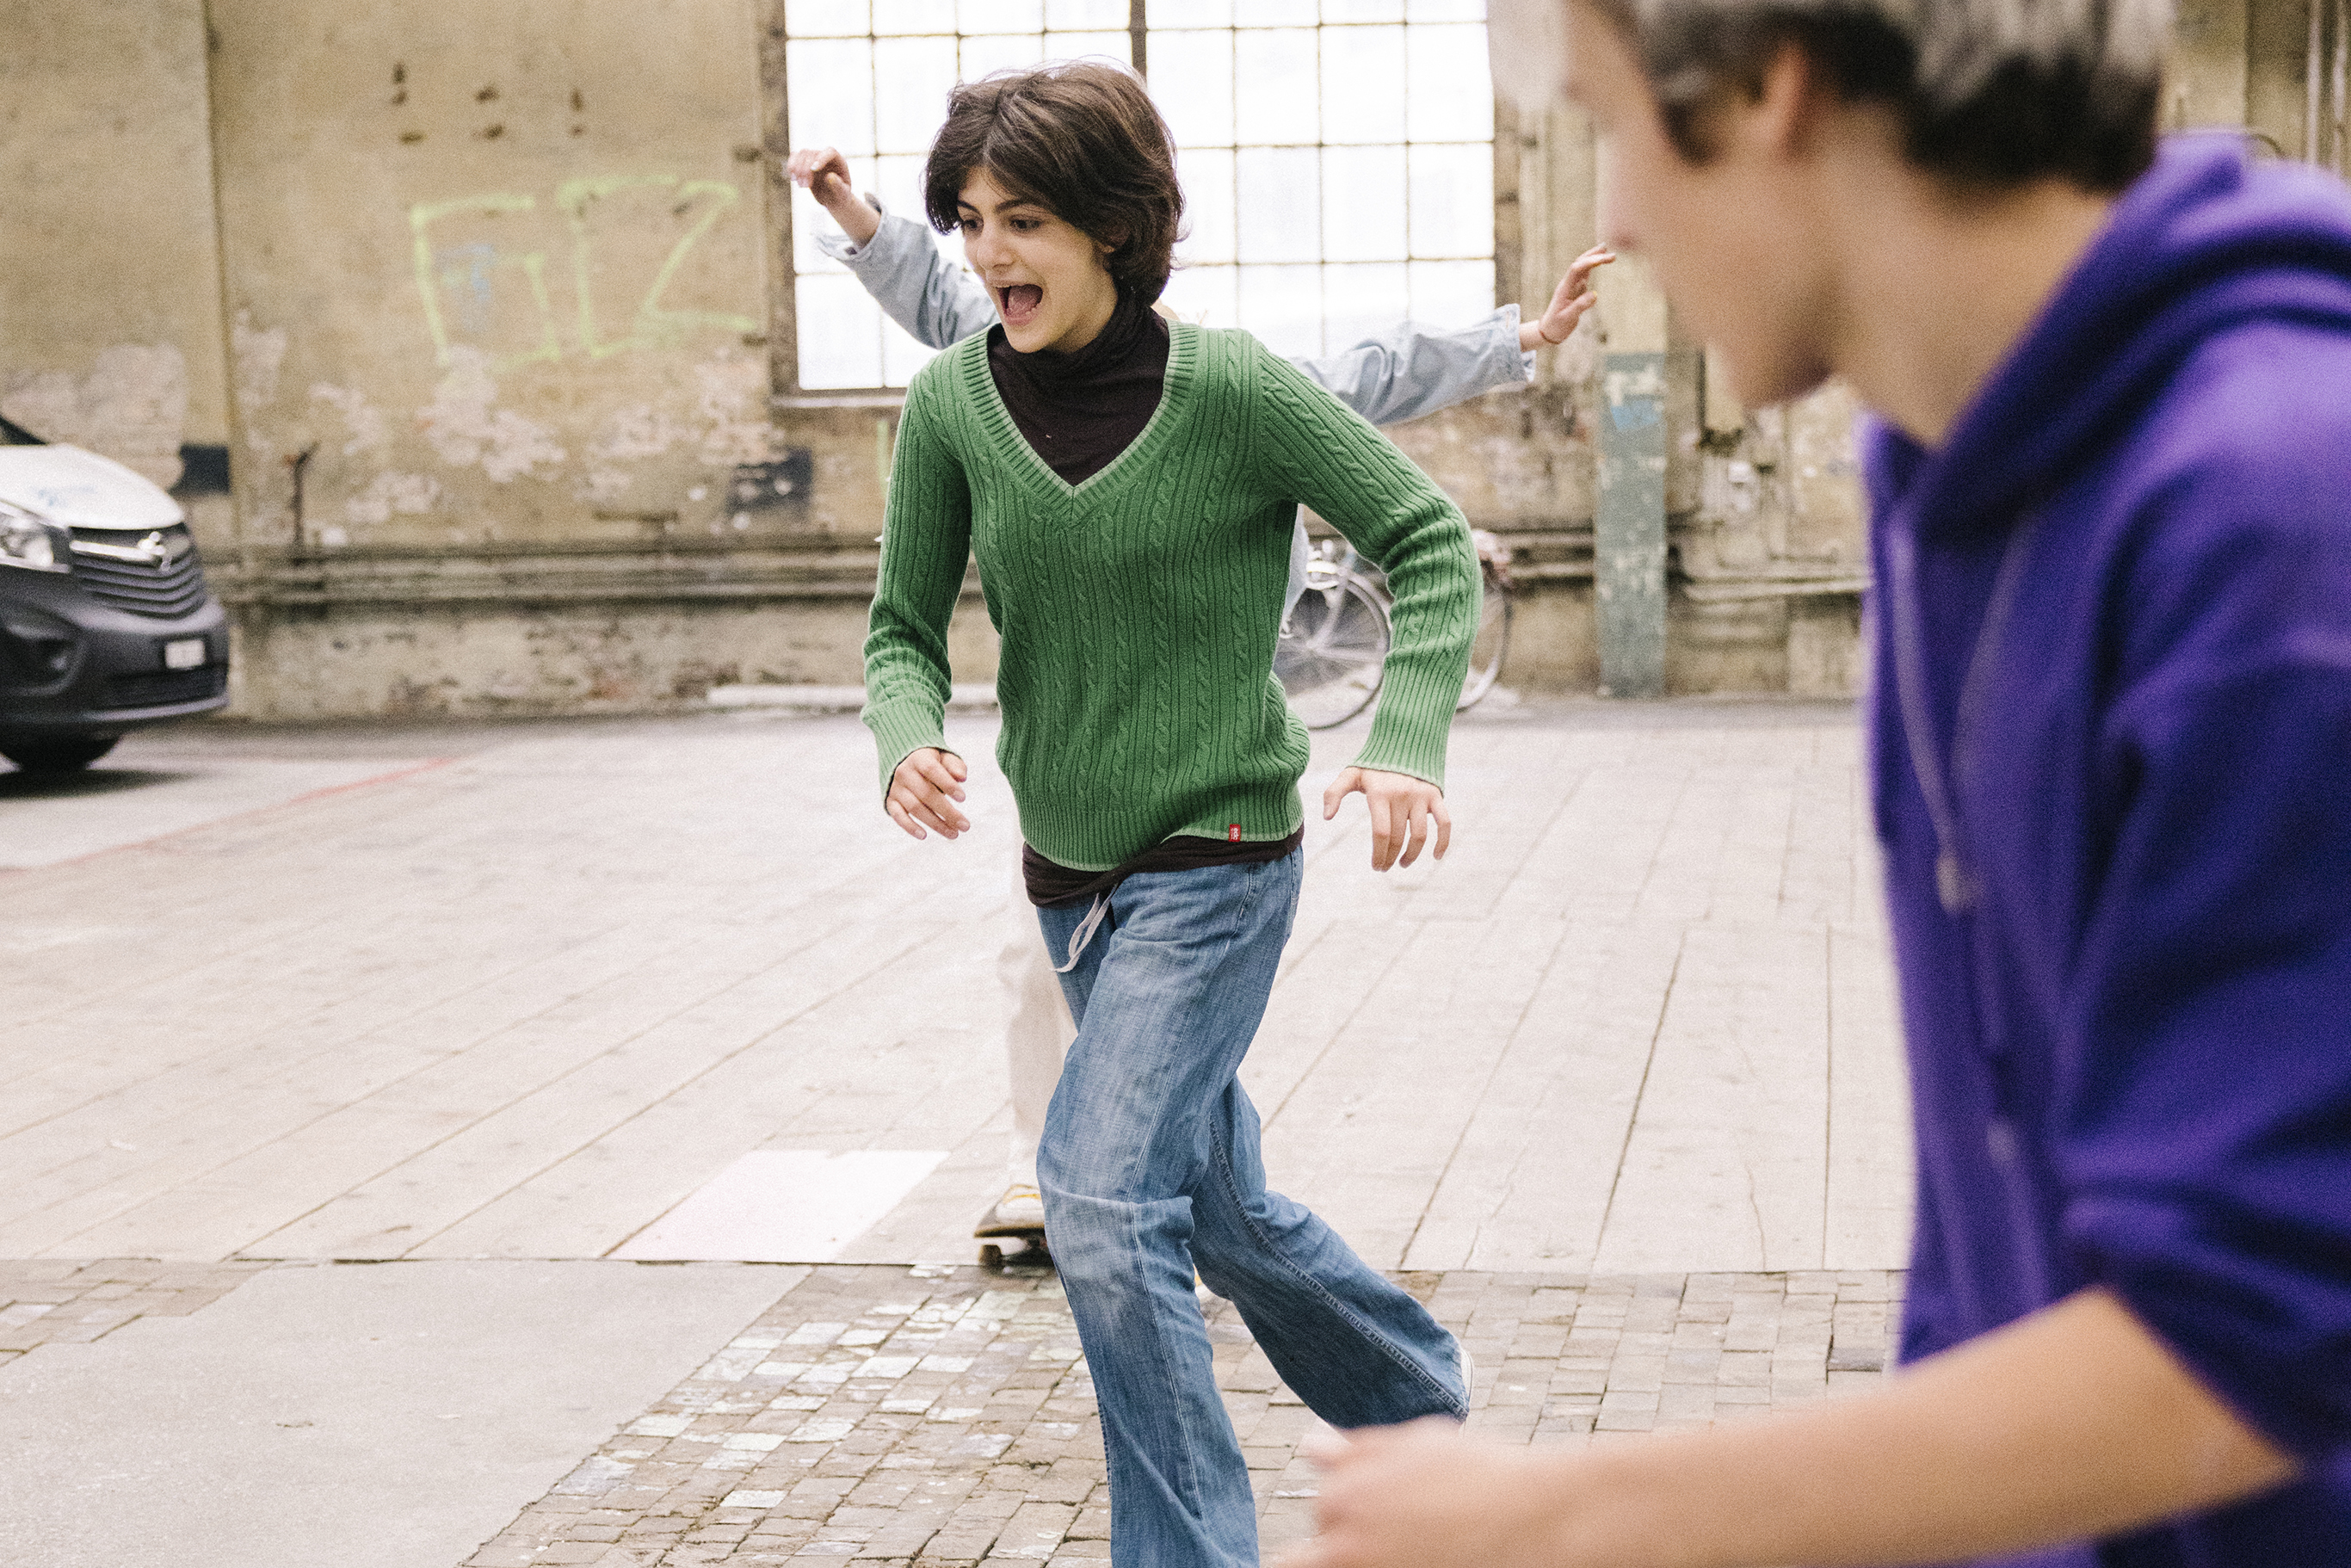 Eine Jugendliche rennt lachend auf ihr am Boden liegendes Skateboard zu.